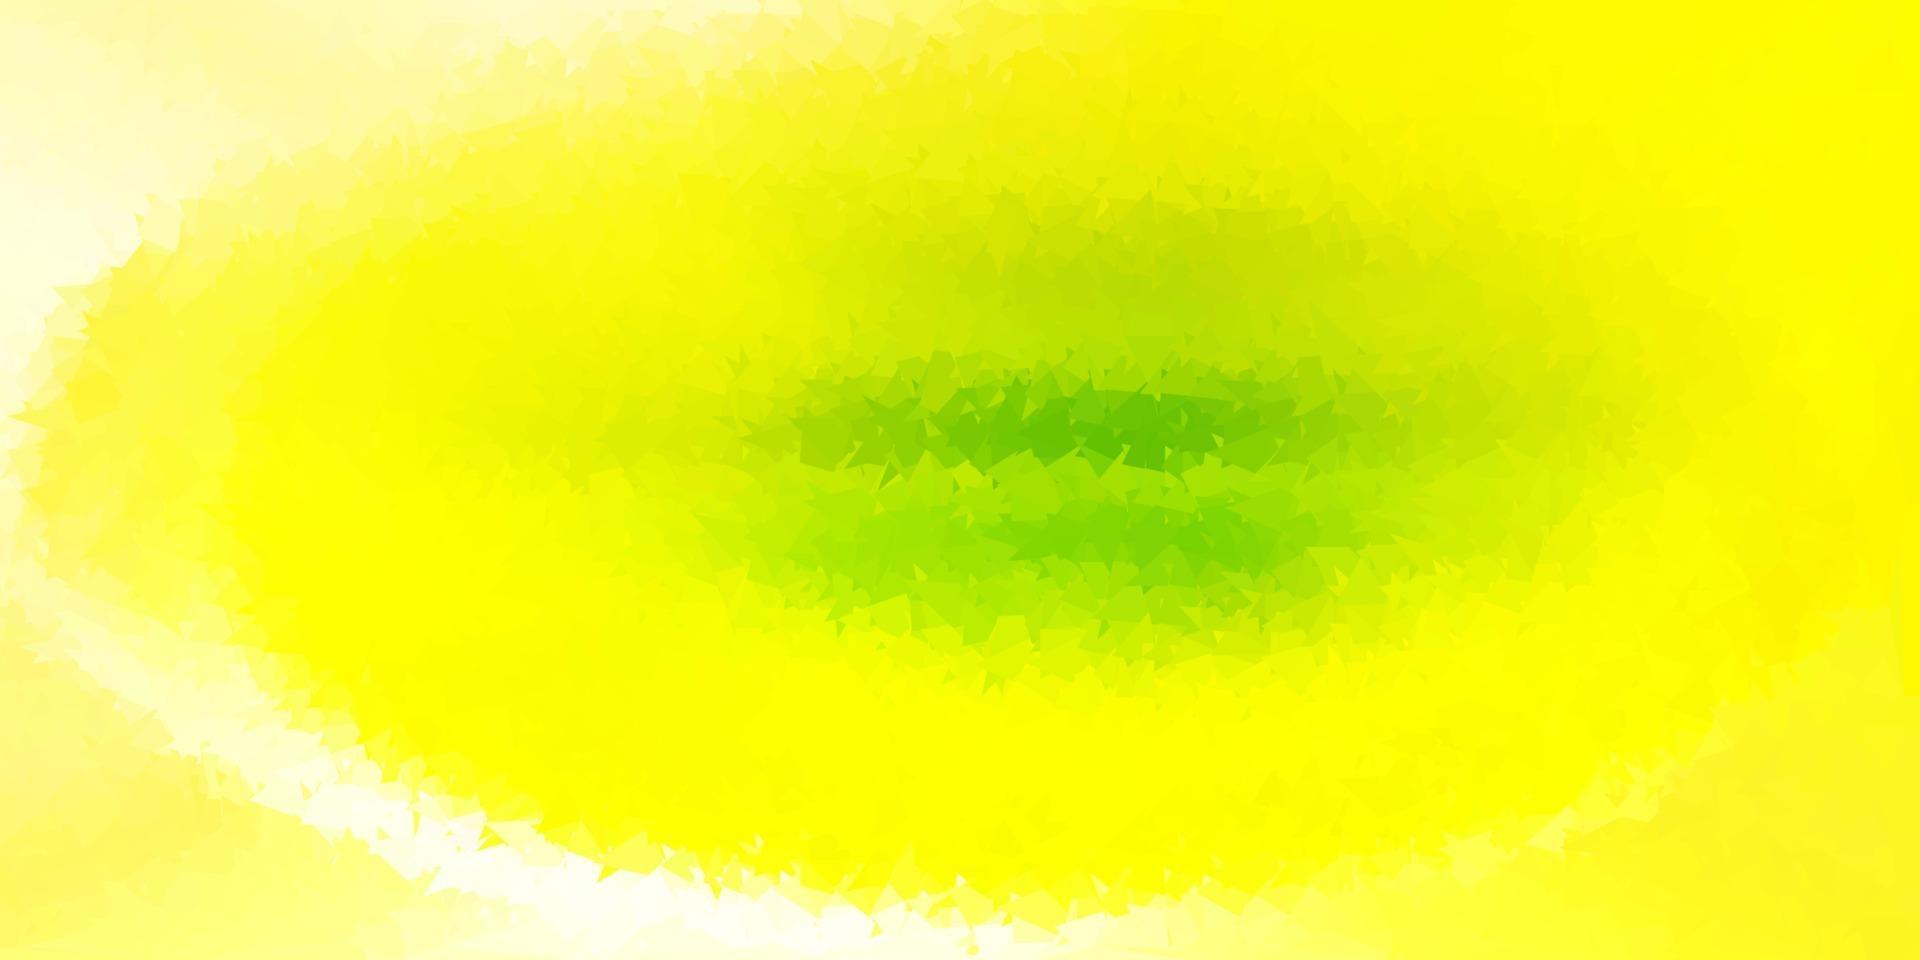 hellgrüne, gelbe Vektor abstrakte Dreiecksschablone.